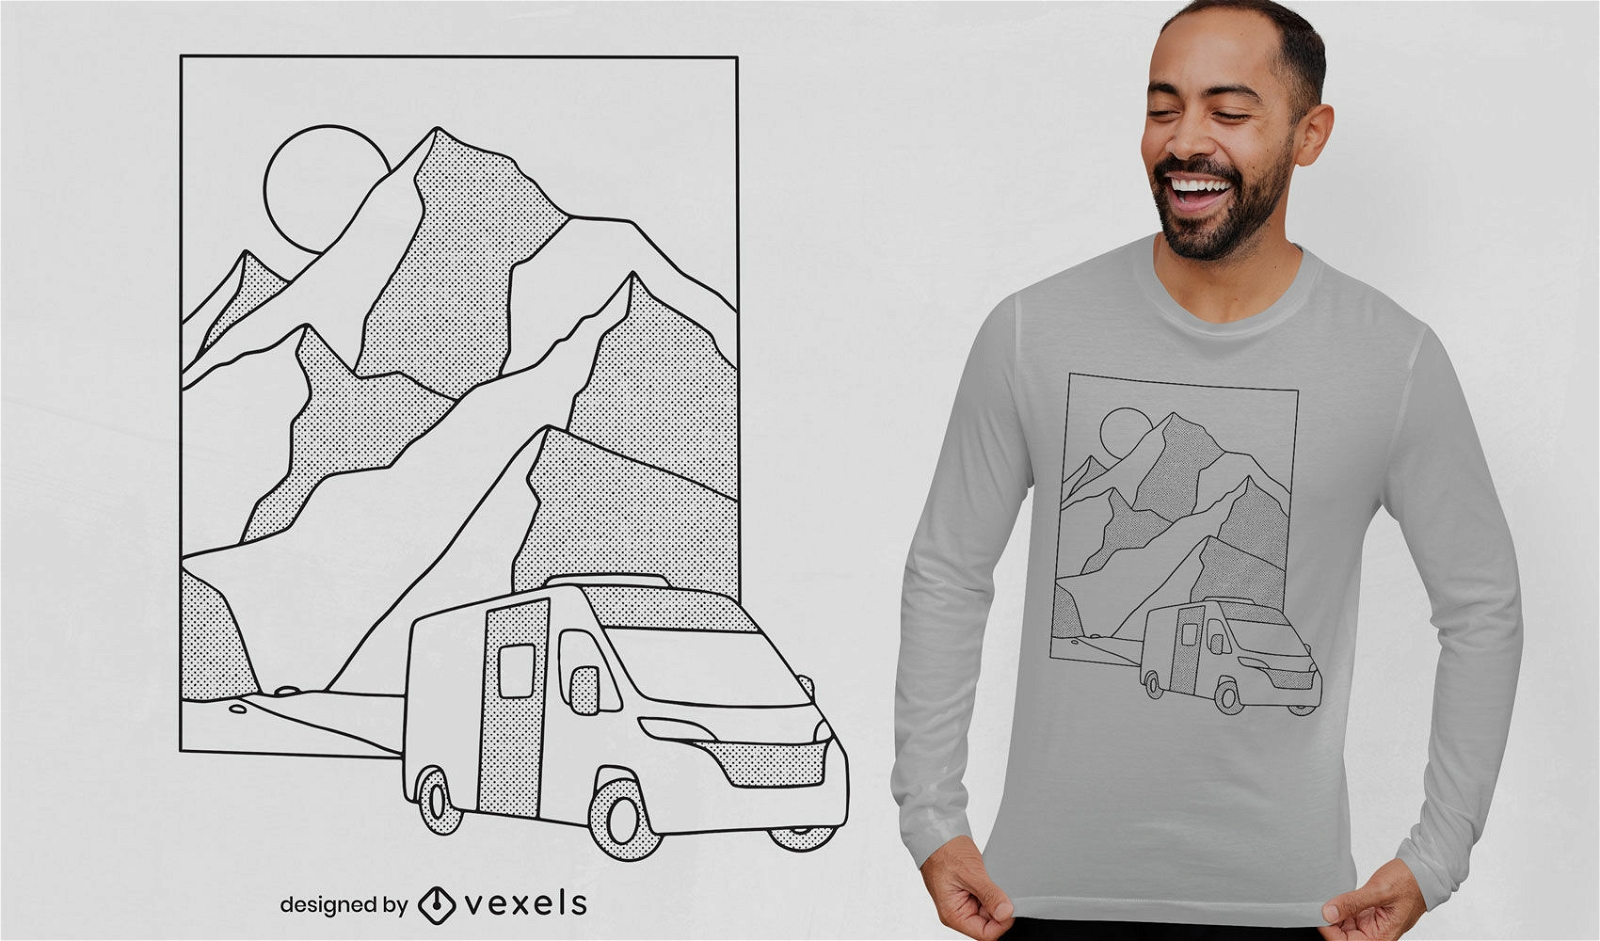 Camping van on mountains t-shirt design